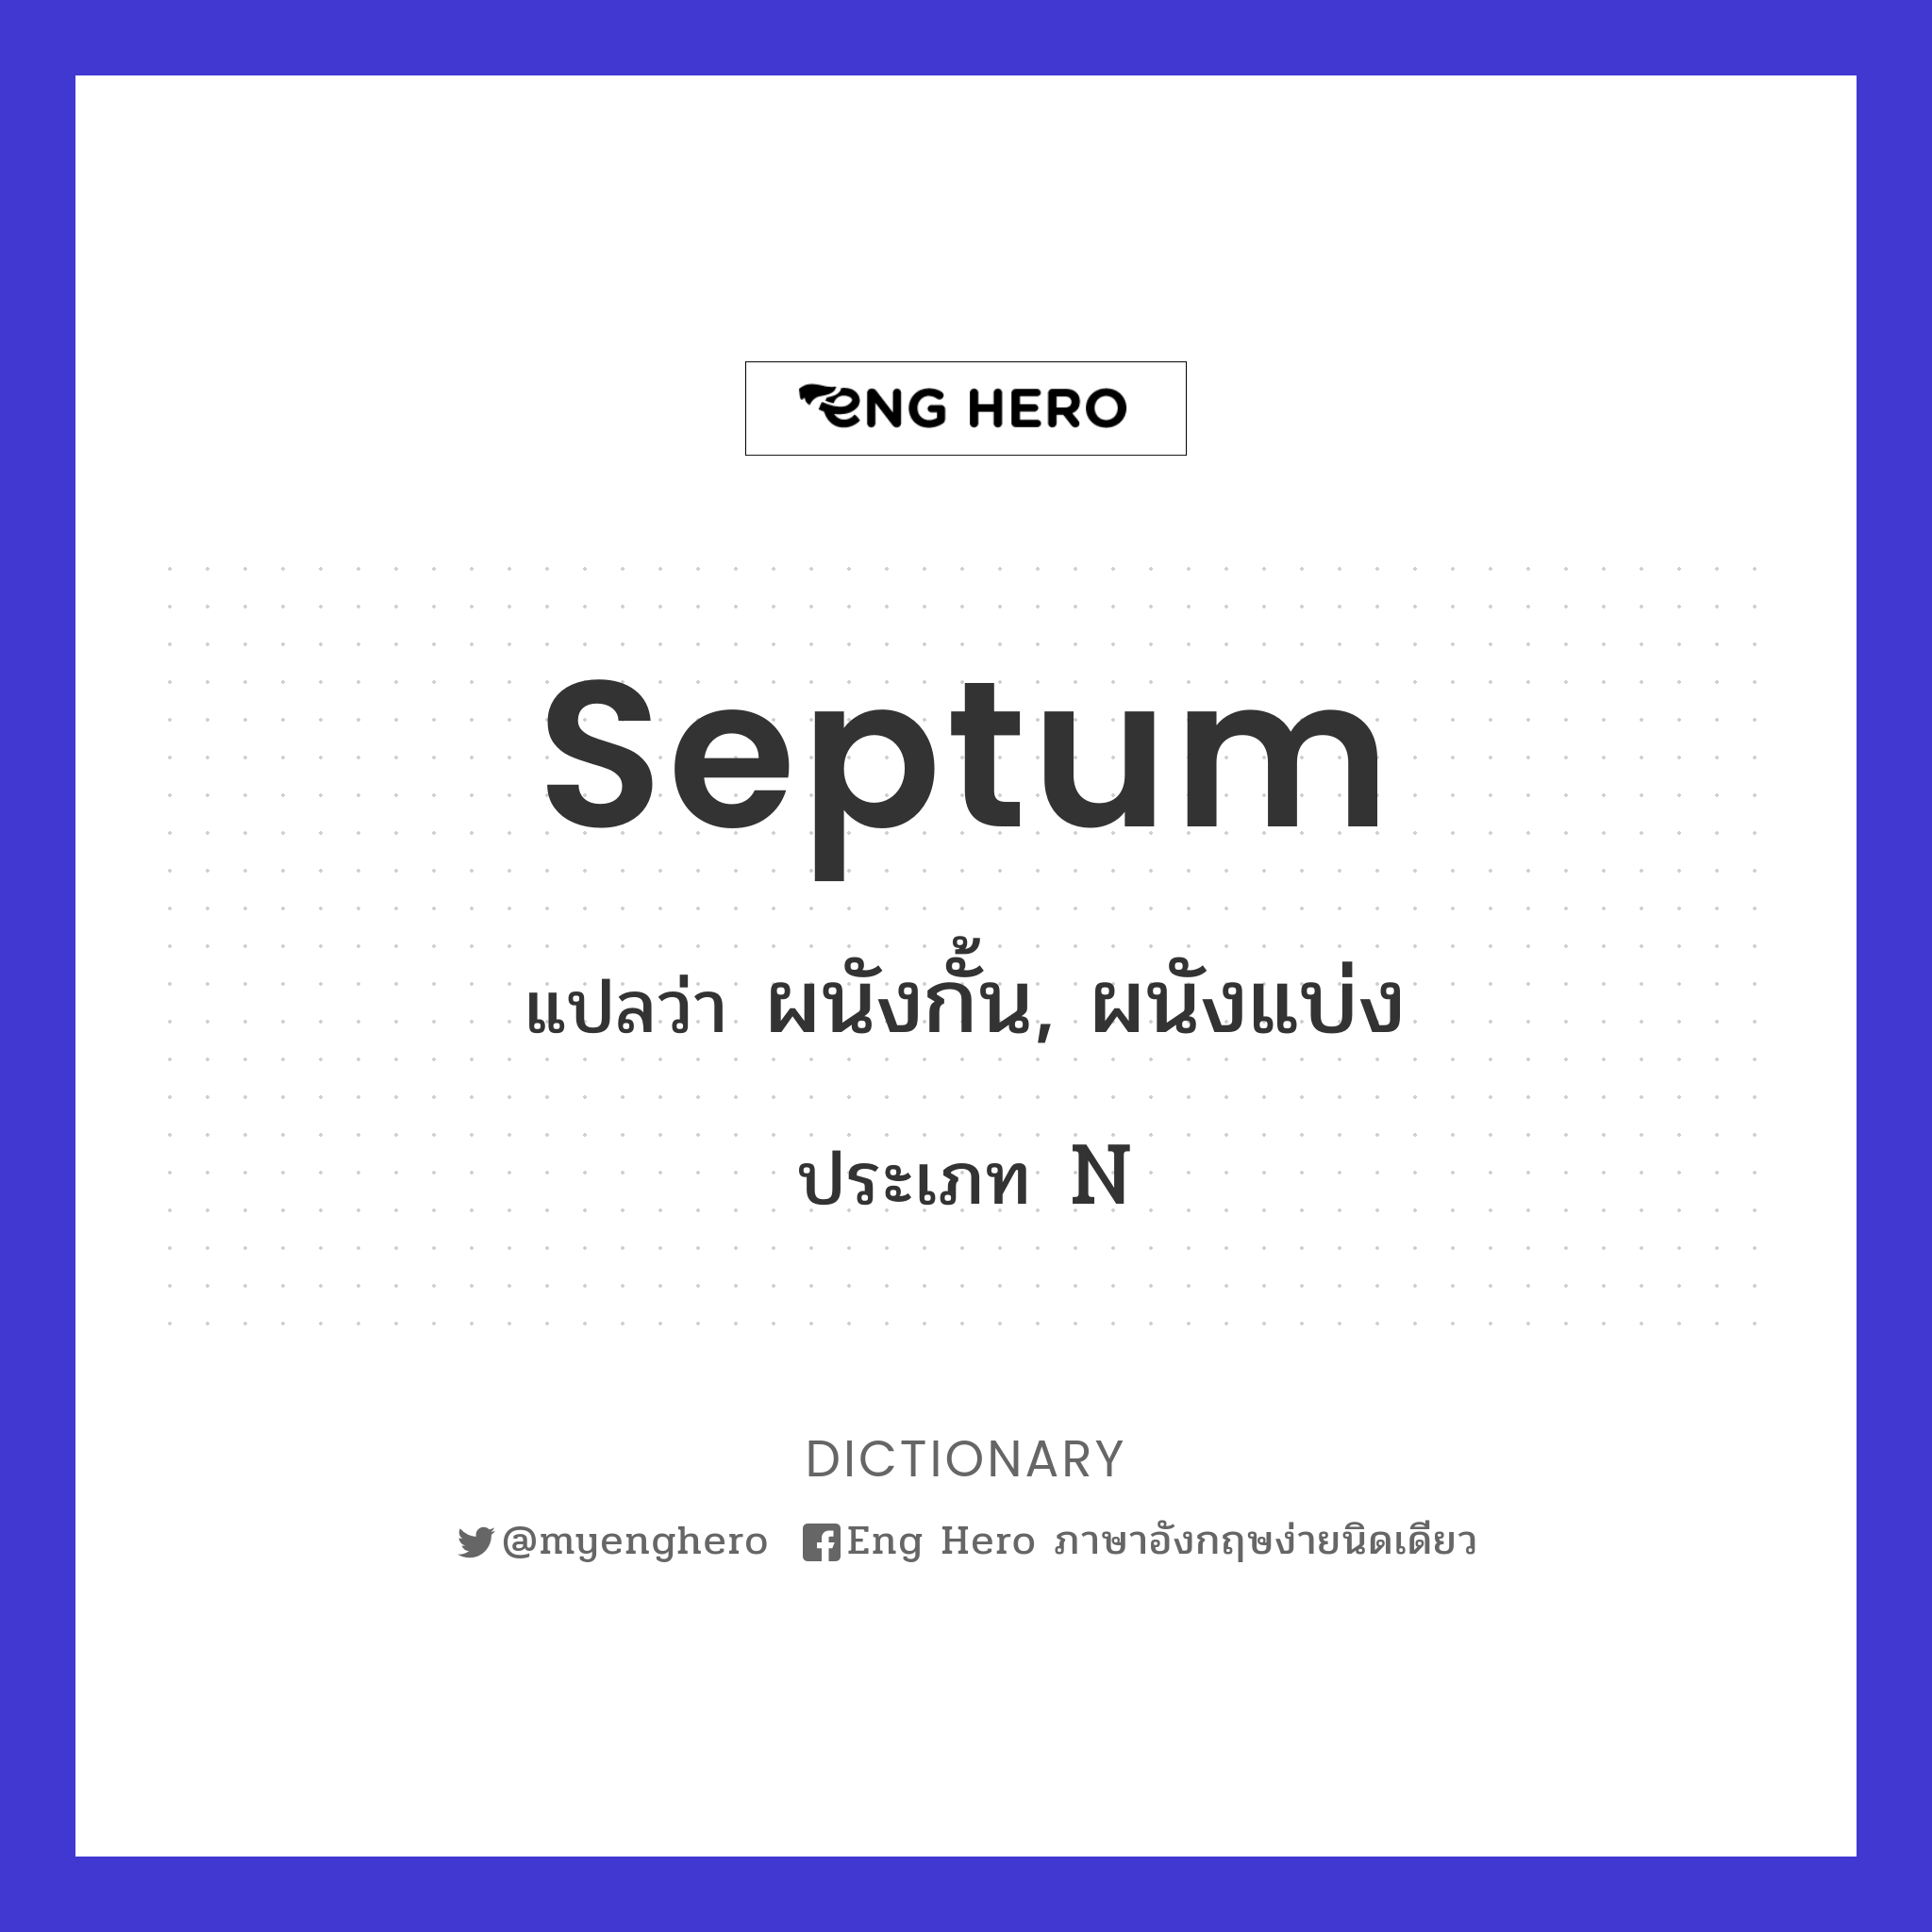 septum